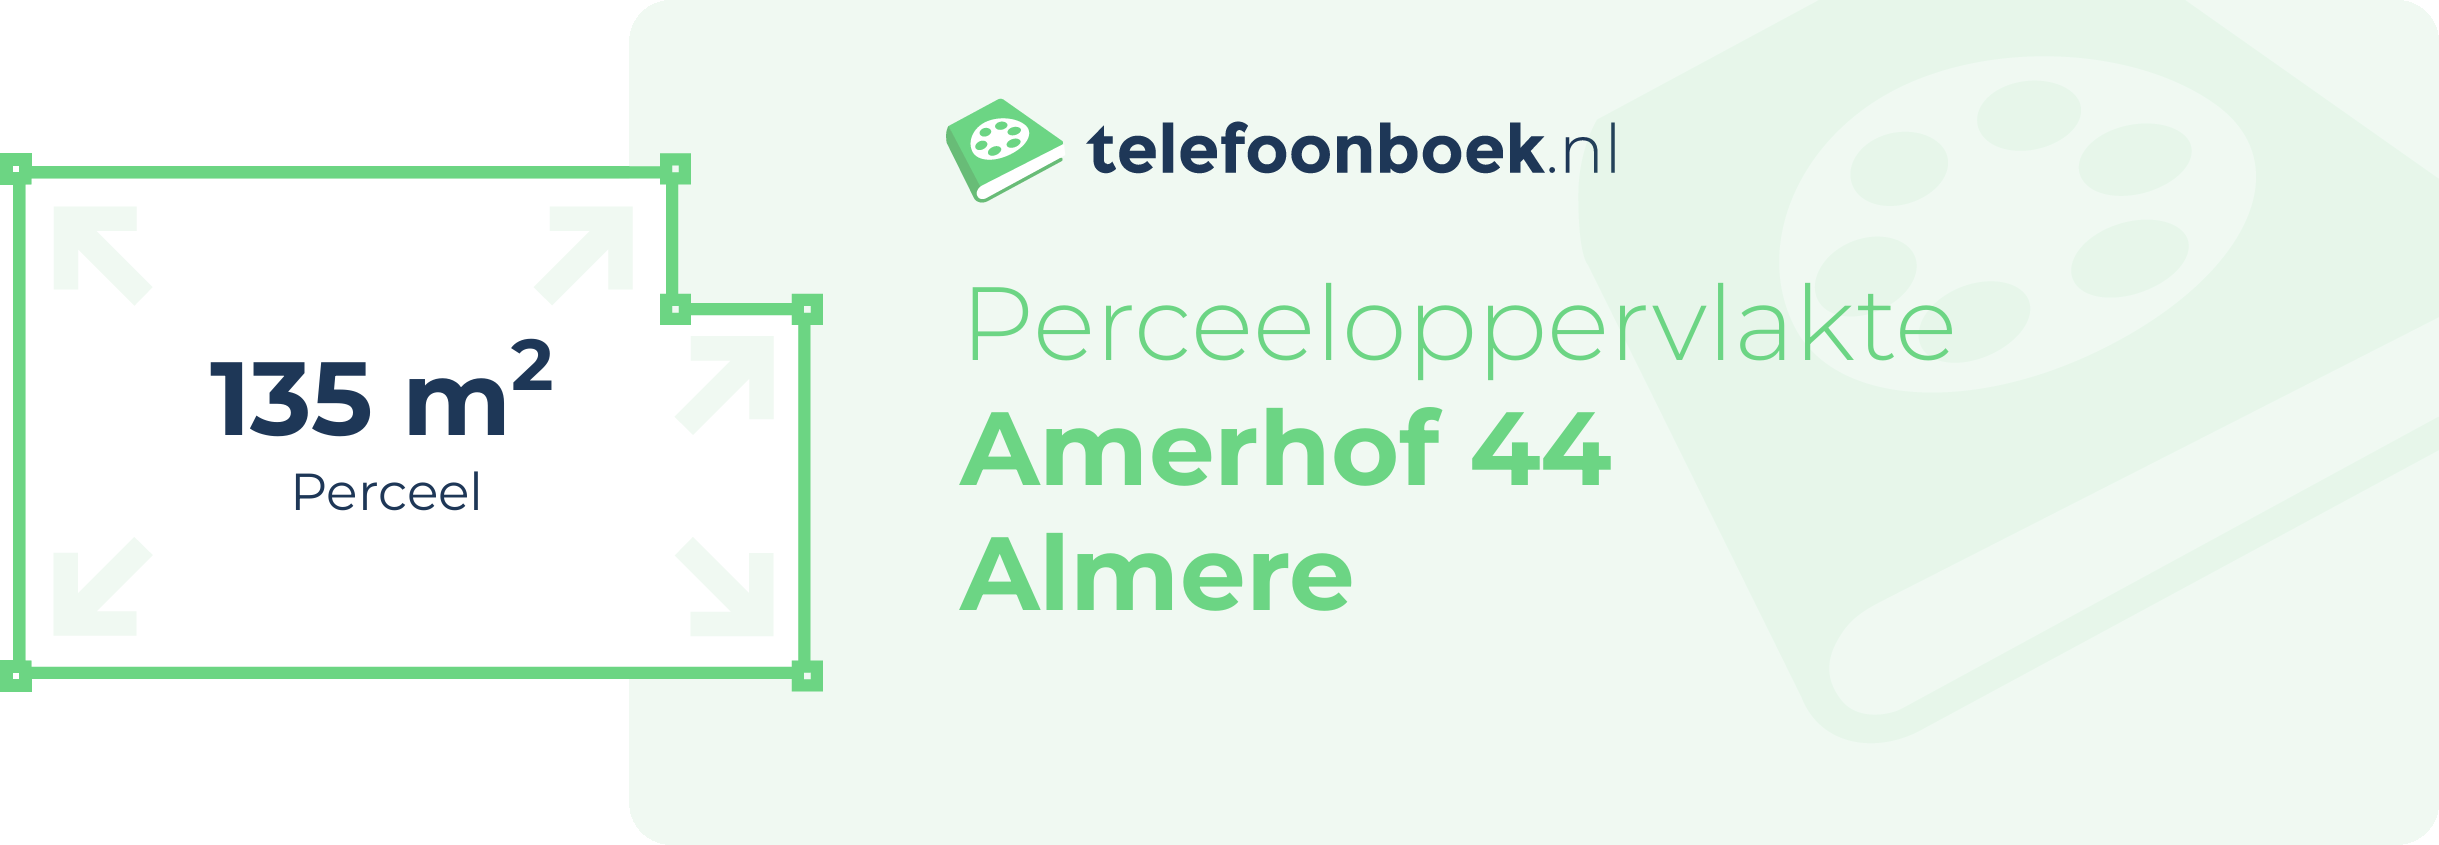 Perceeloppervlakte Amerhof 44 Almere